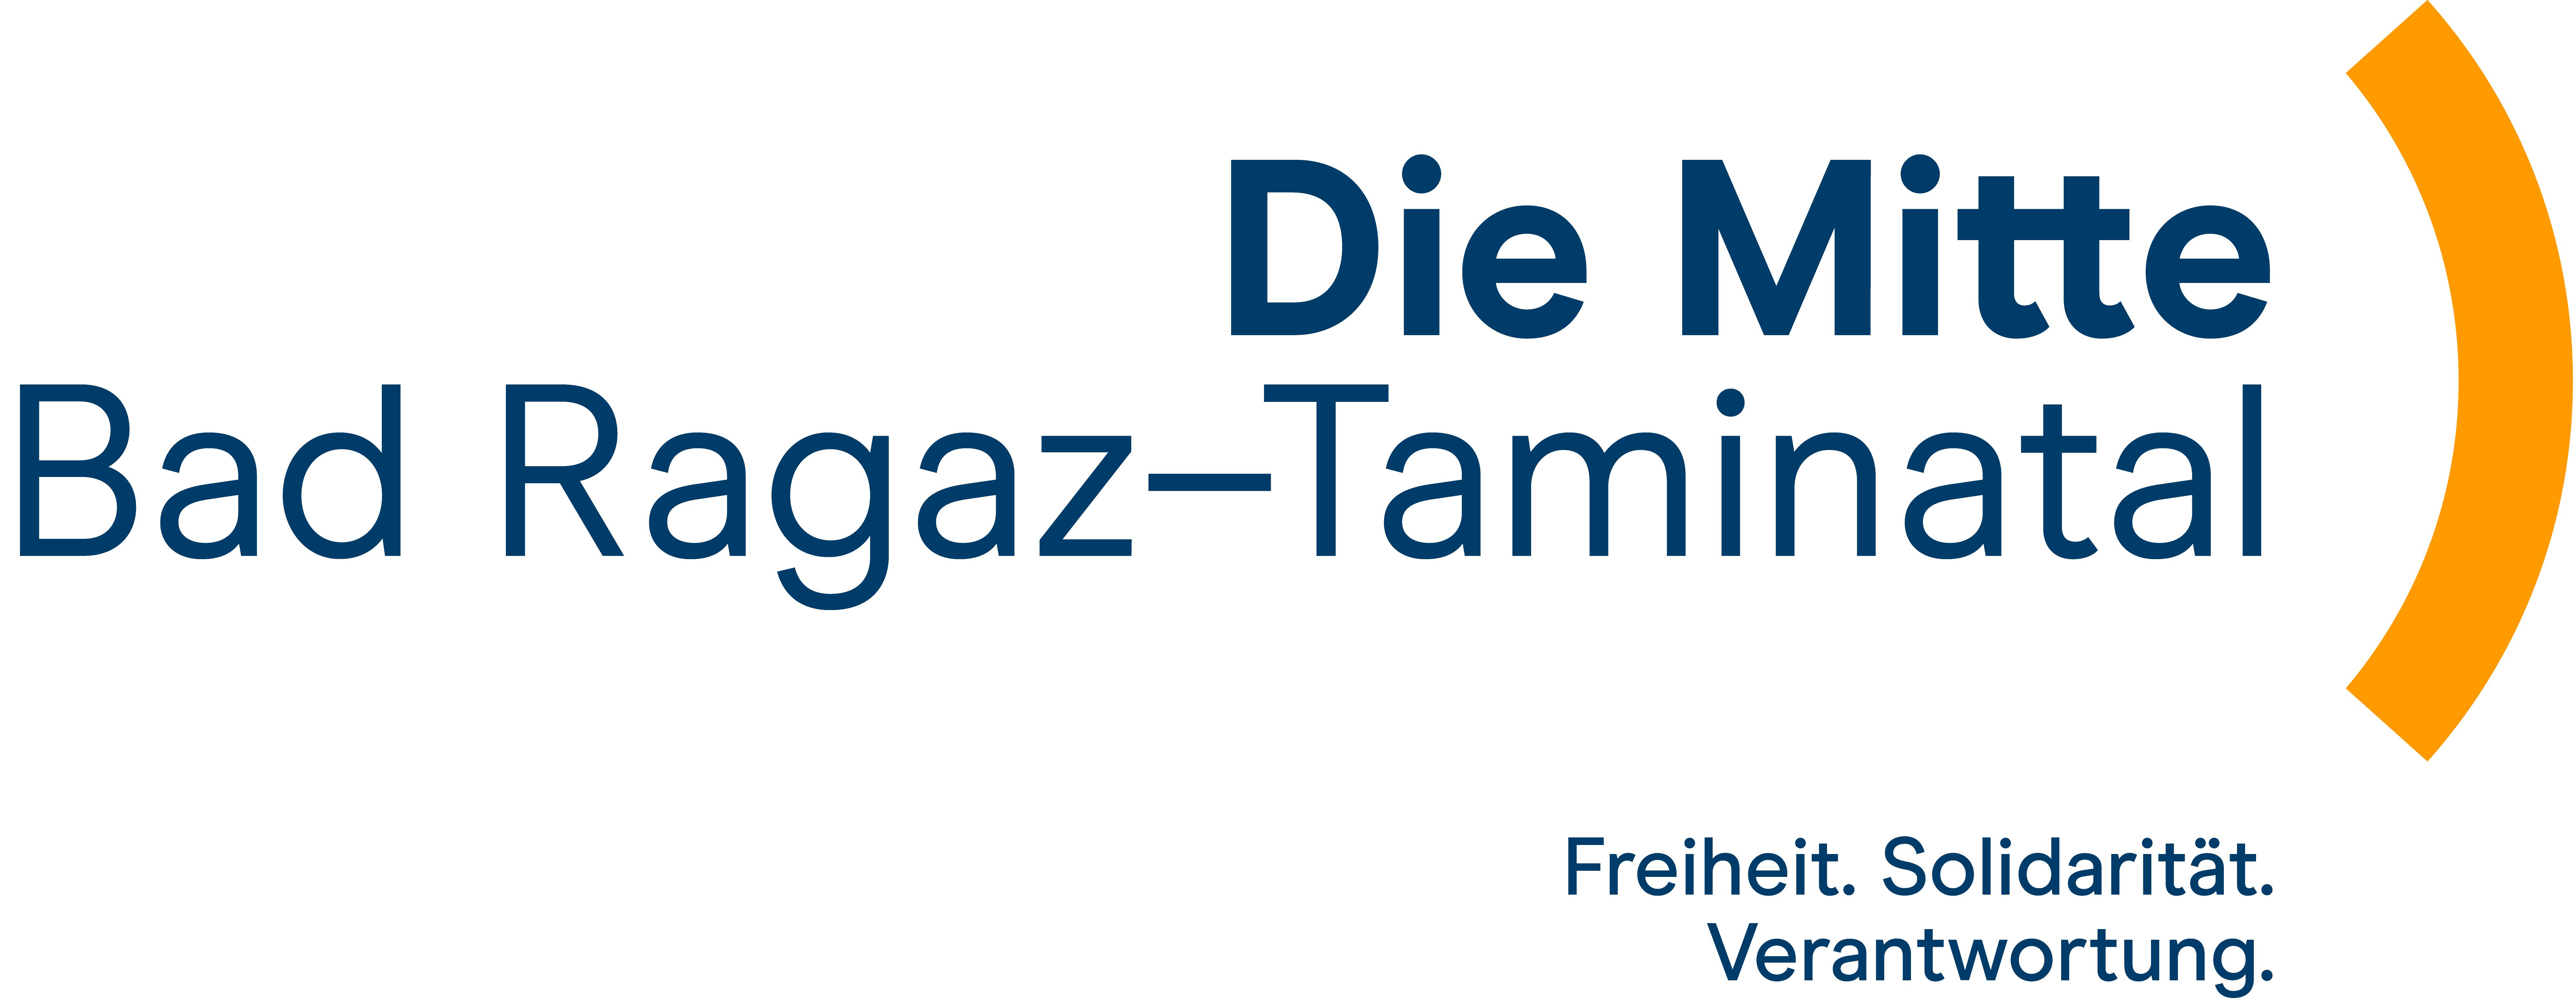 Logo - Die Mitte Bad Ragaz - Taminatal